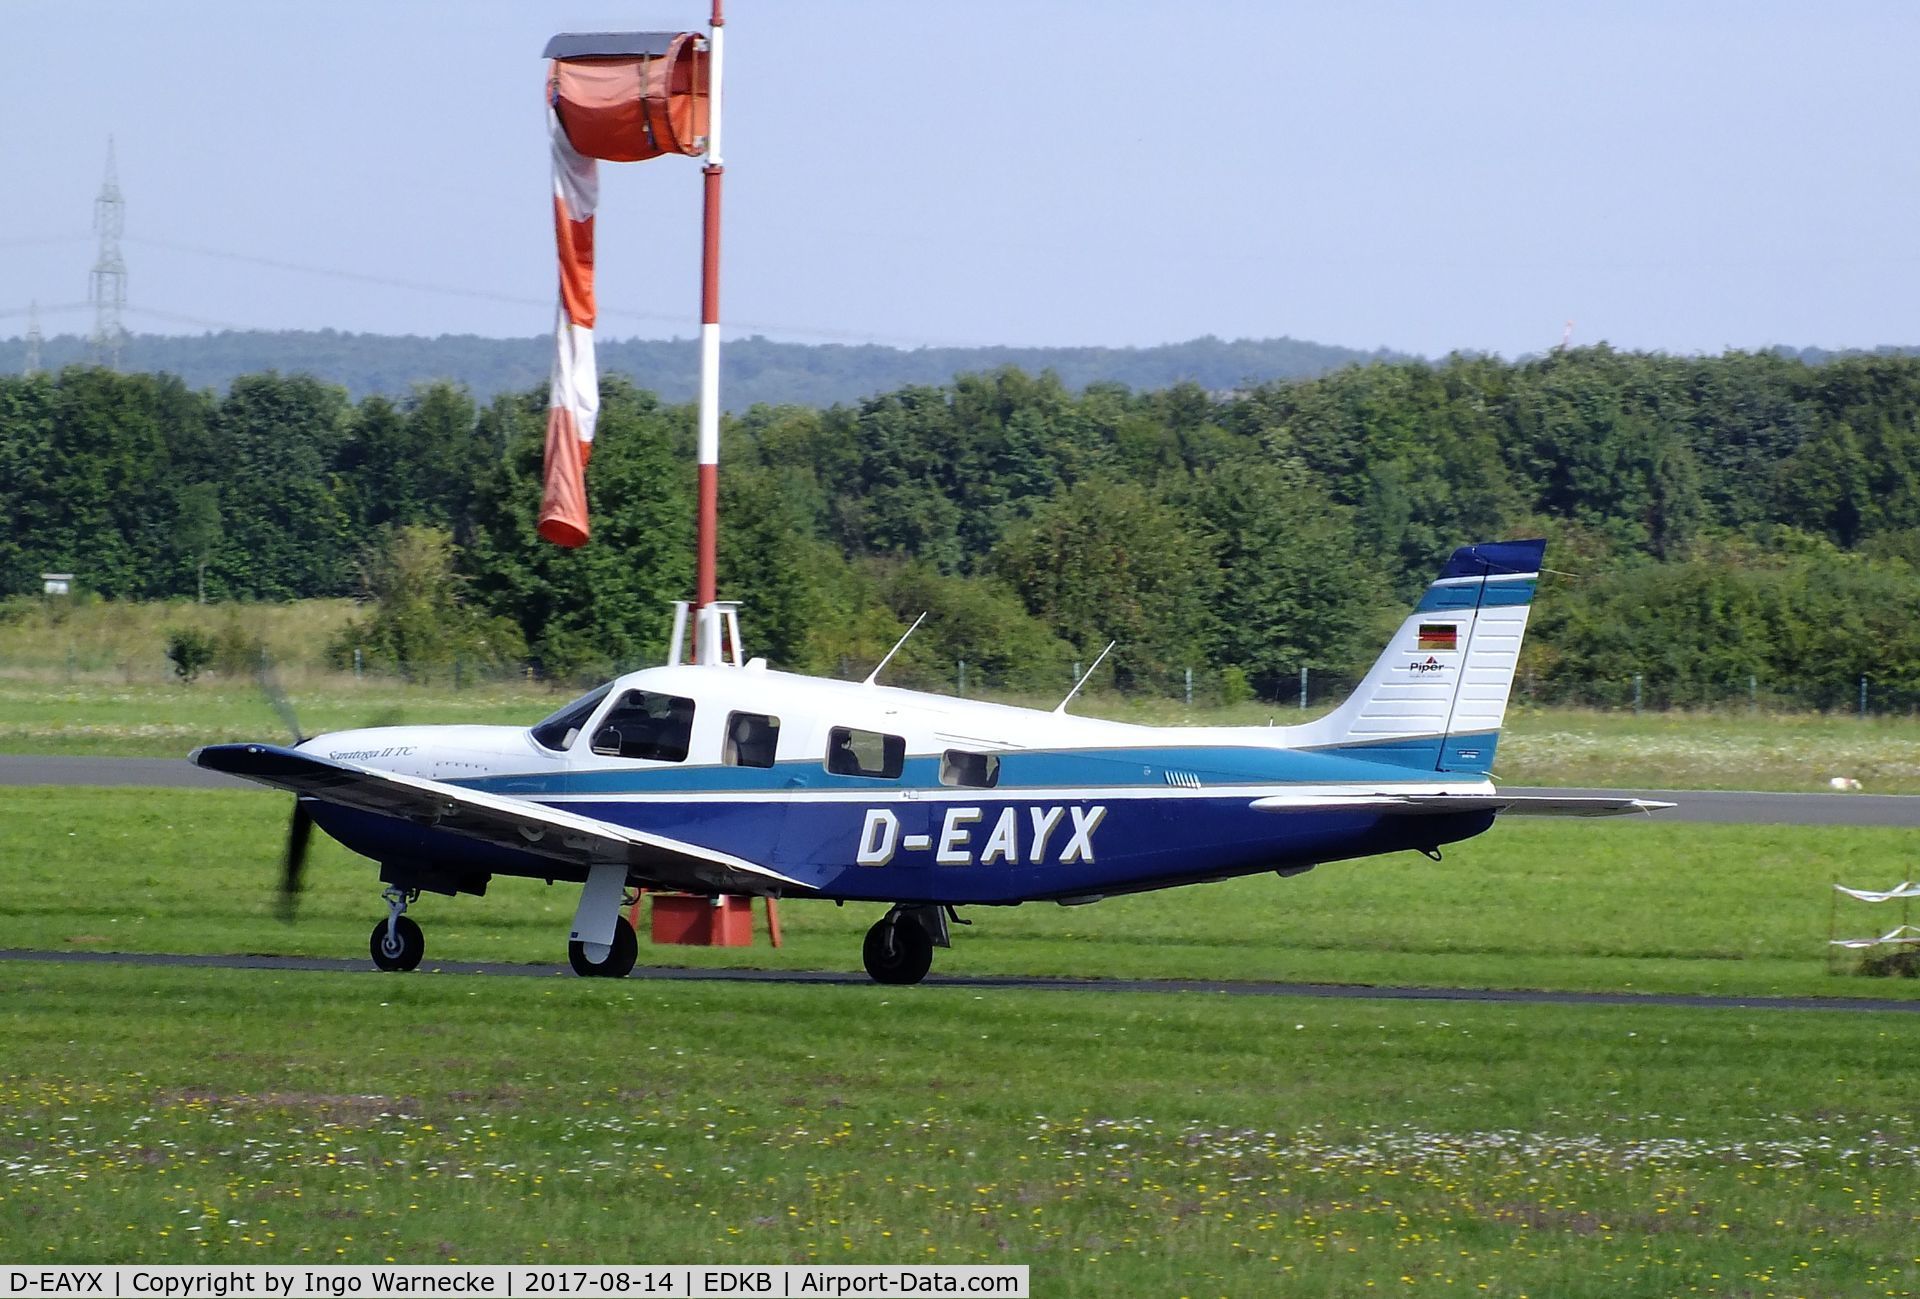 D-EAYX, 1997 Piper PA-32R-301T Turbo Saratoga C/N 3257024, Piper PA-32R-301T Turbo Saratoga at Bonn-Hangelar airfield